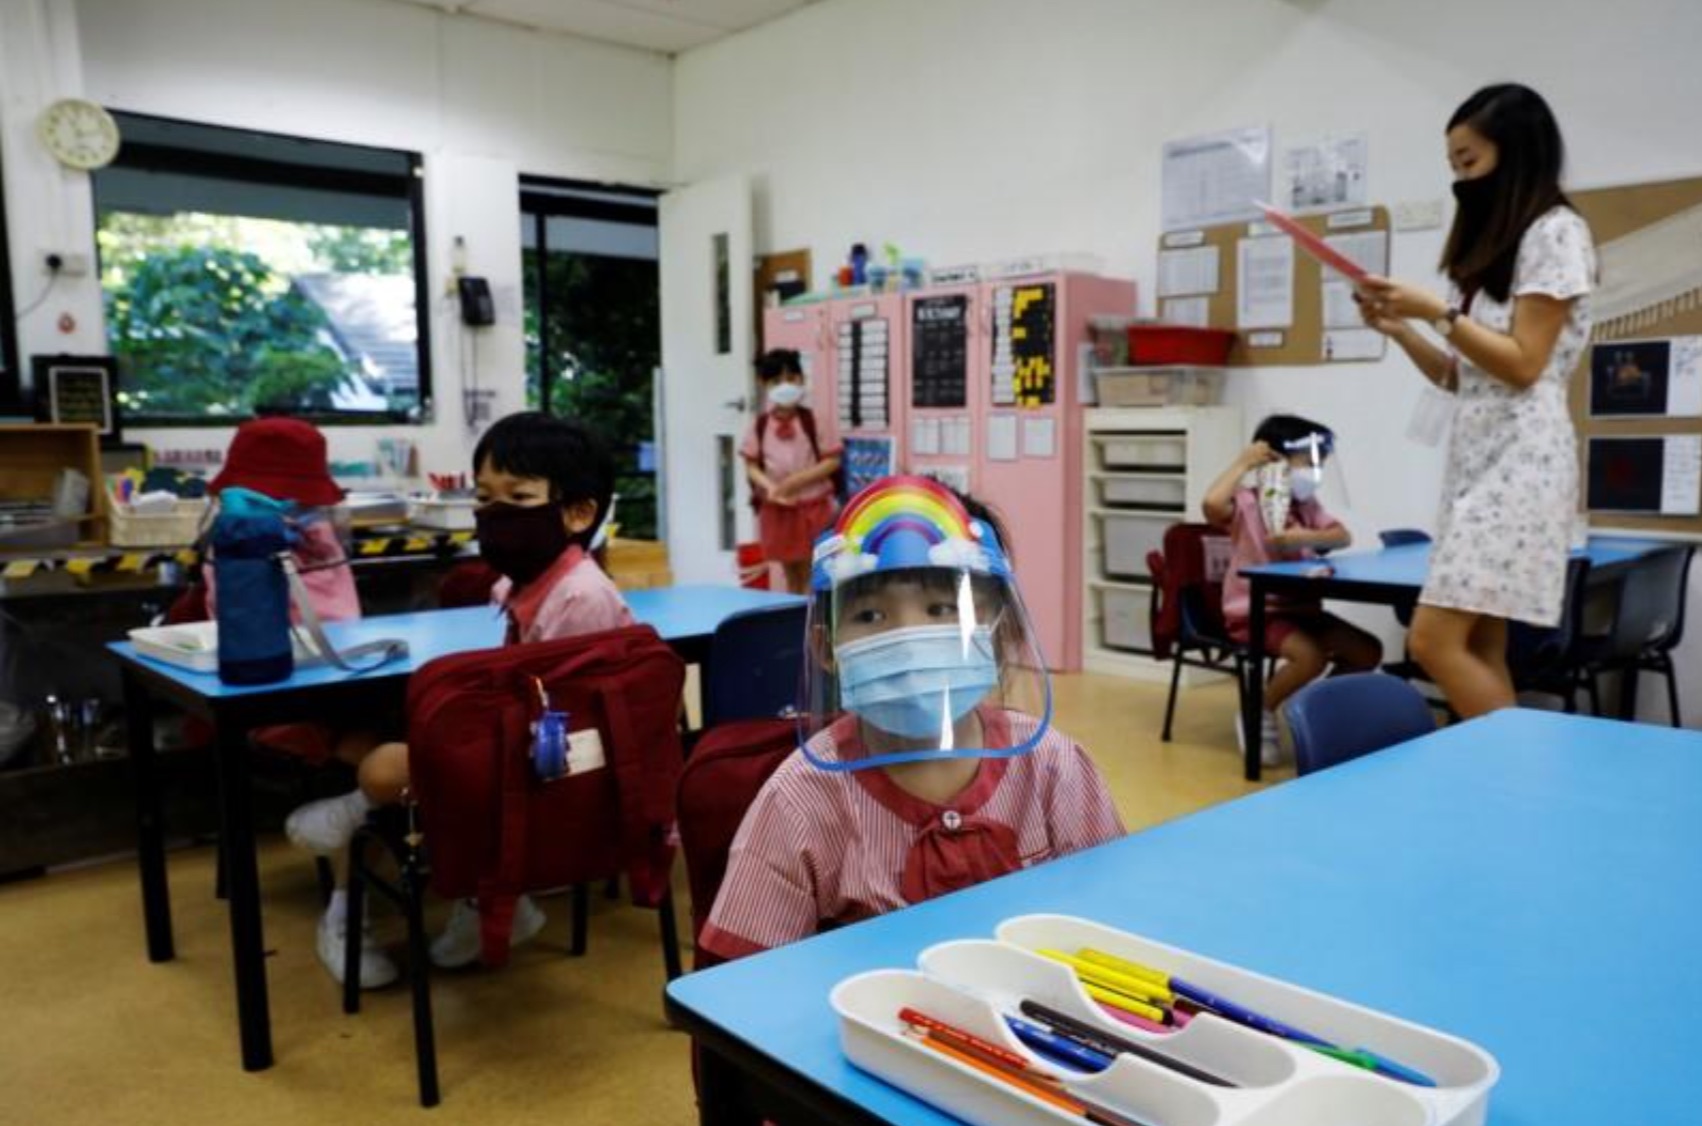 รัฐบาลสิงคโปร์ประกาศเปิดโรงเรียนอนุบาล แต่ขอให้รักษาระยะห่าง